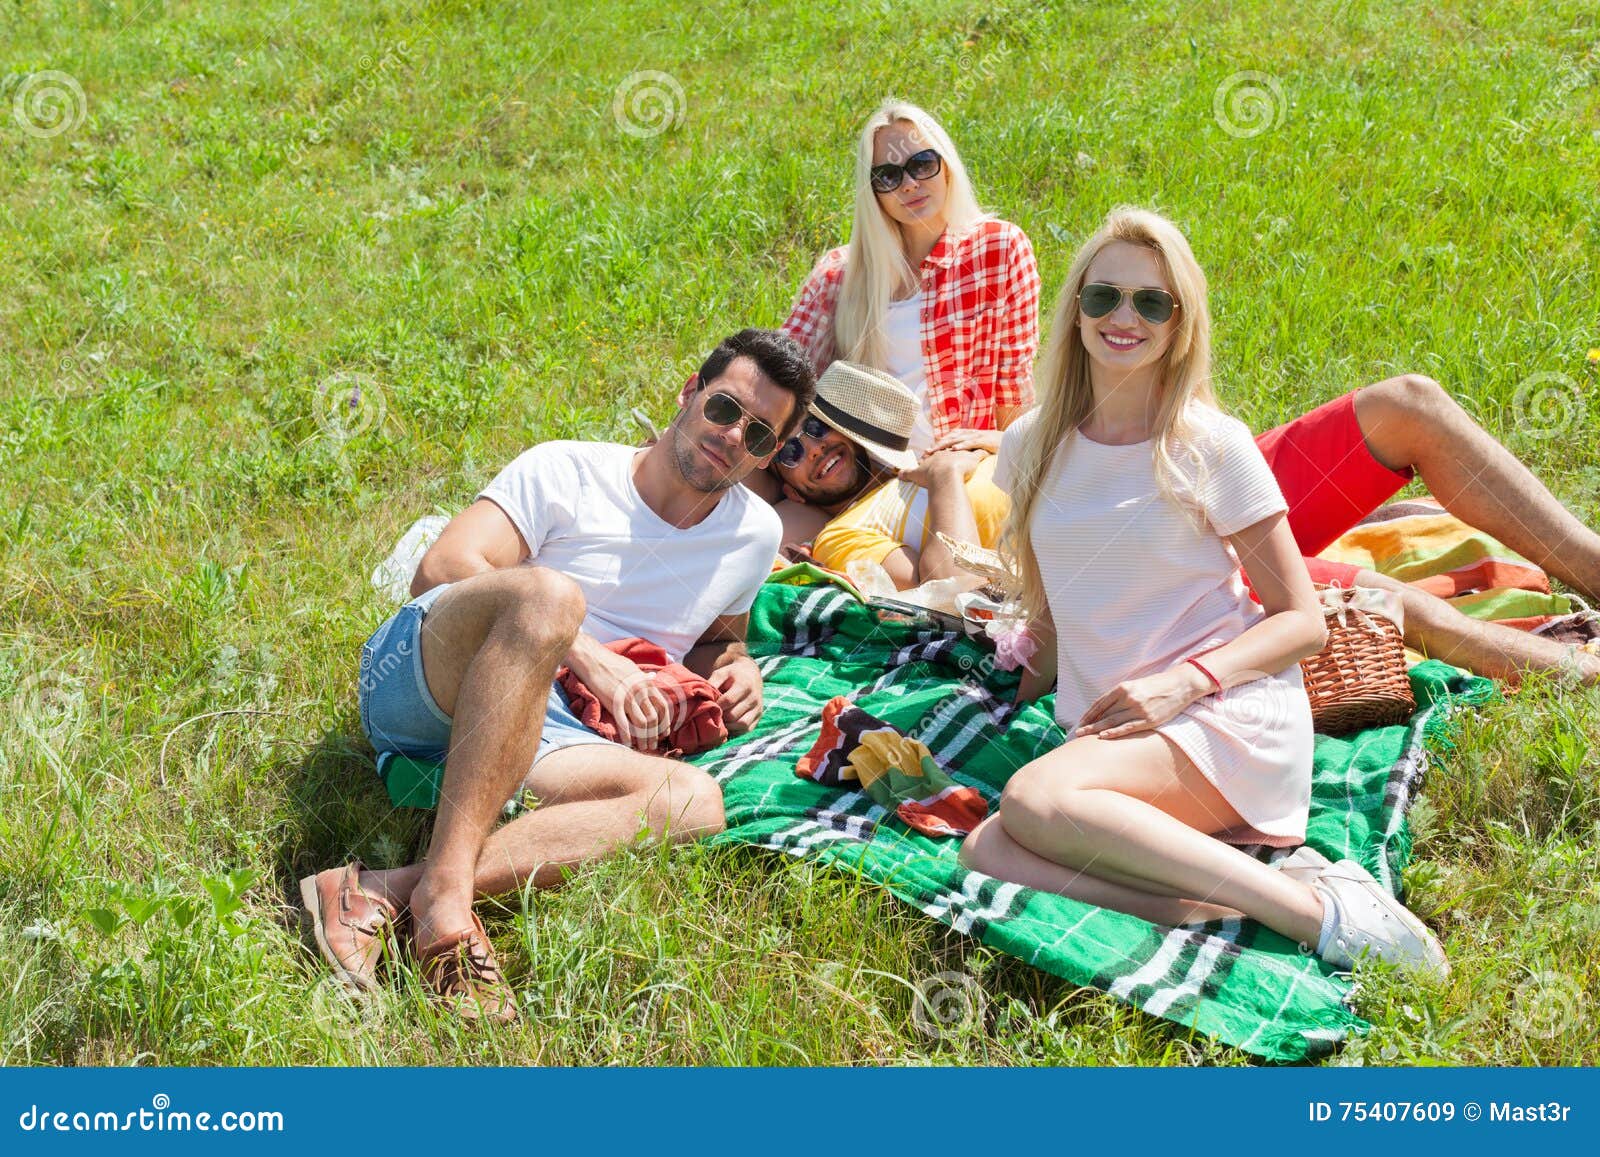 Блондинка присосалась к члену друга на пикнике